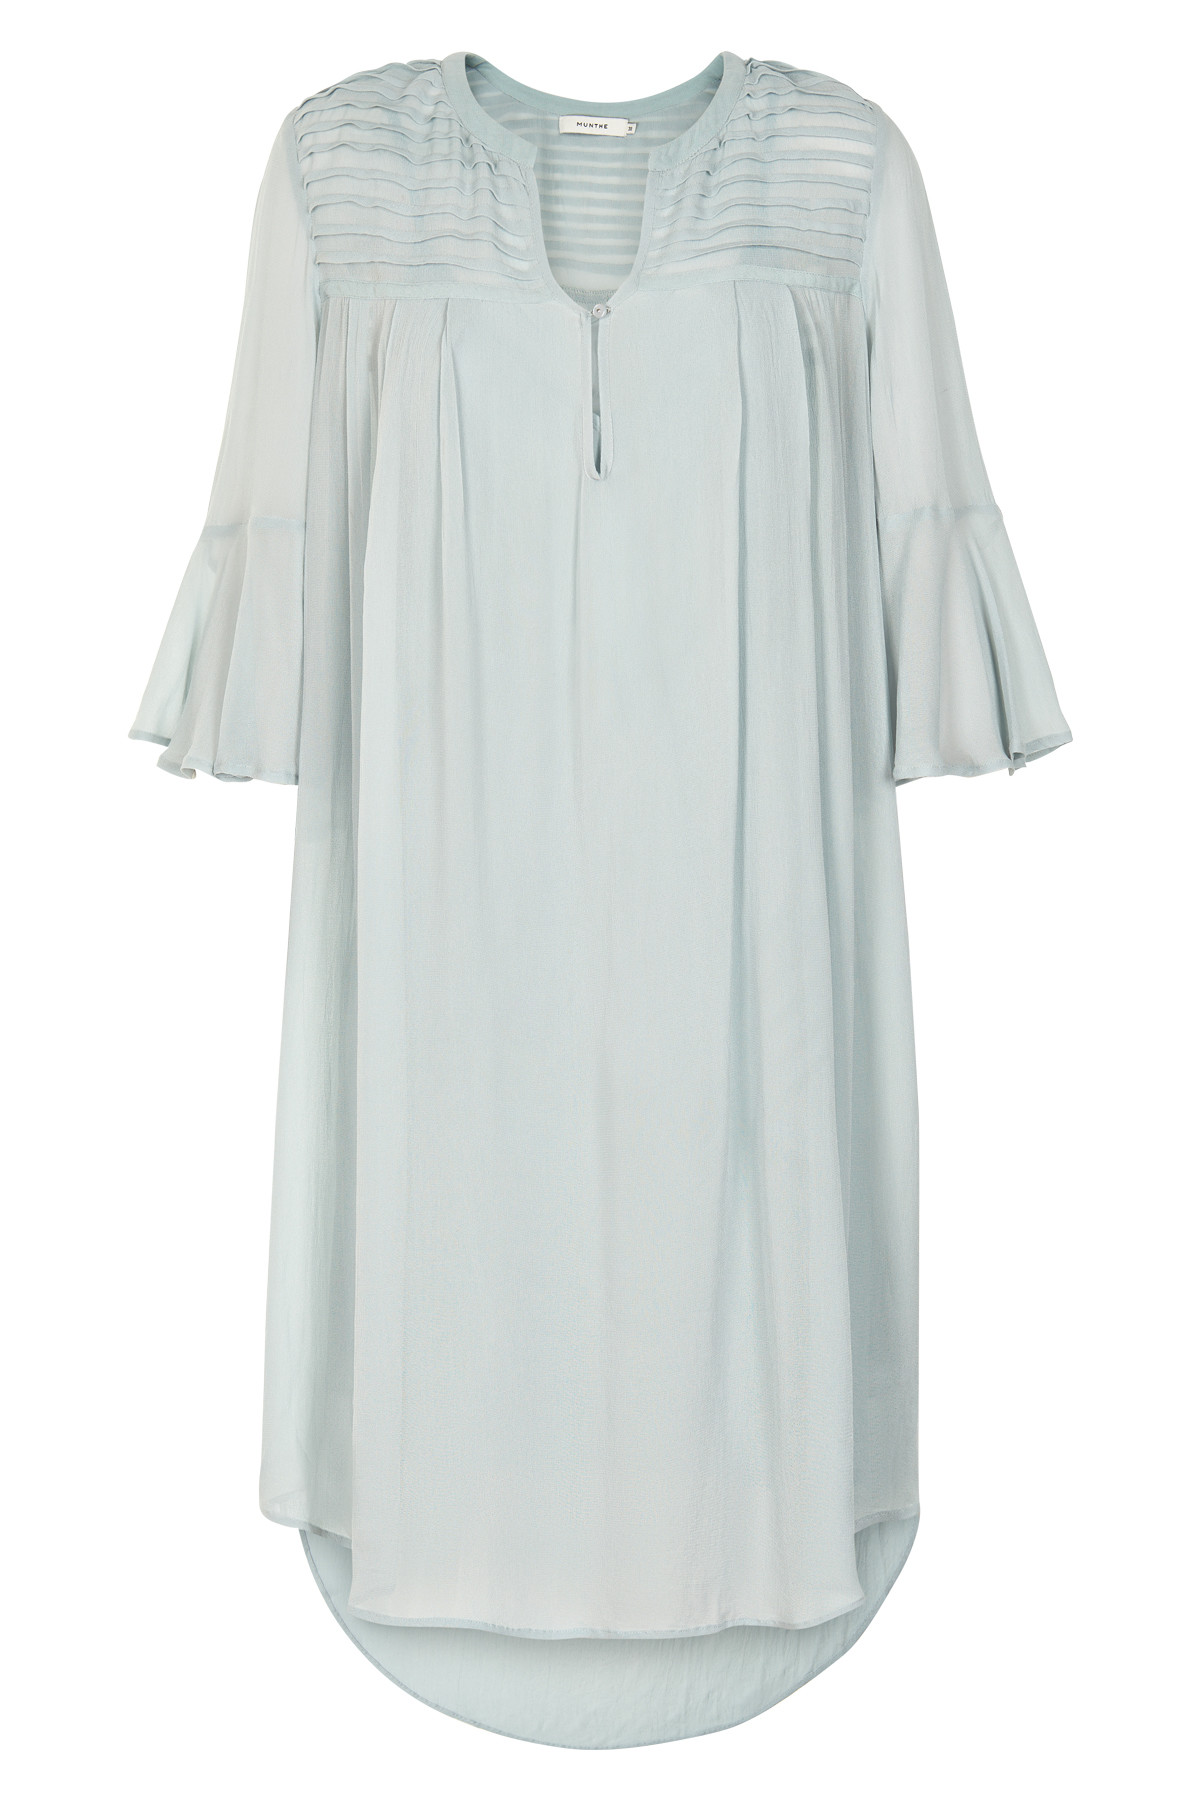 Munthe Lucky Dress, Farve: Blå, Størrelse: 38, Dame